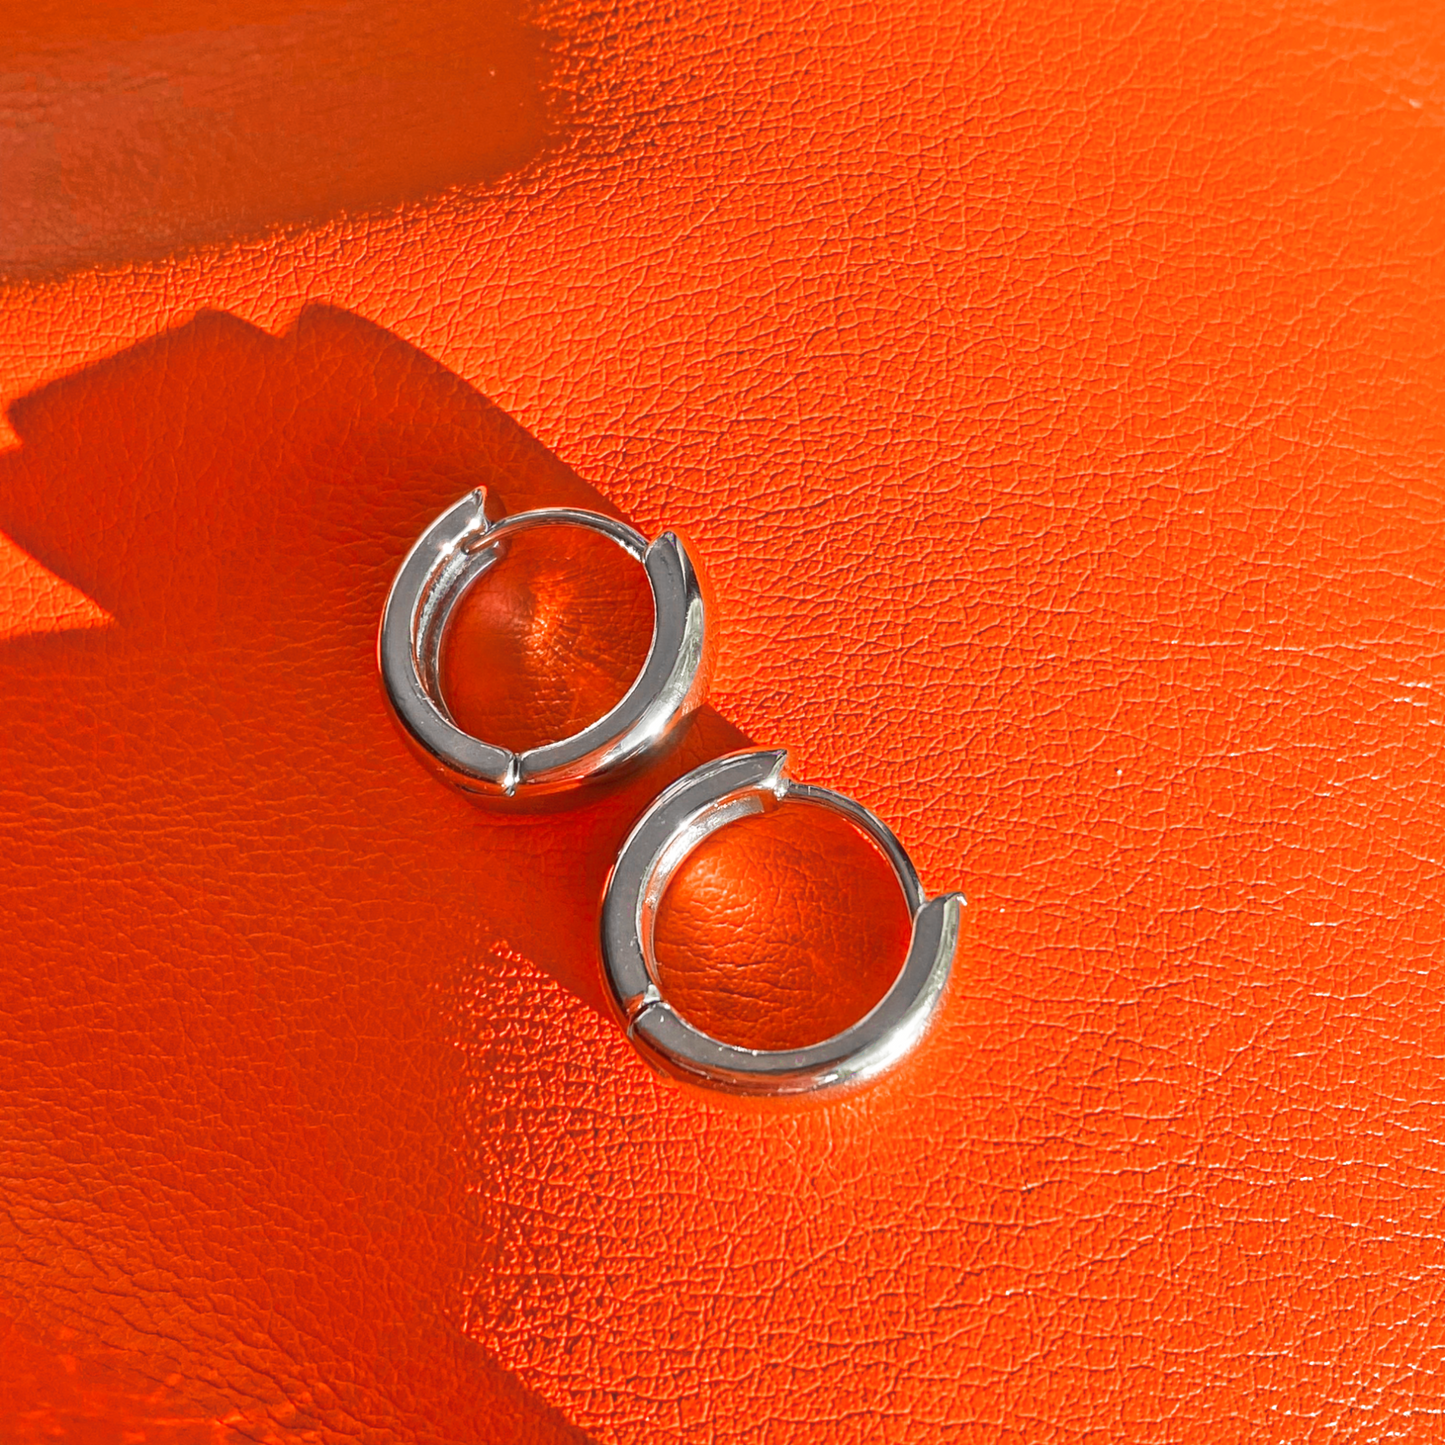 JEN - Chunky hoops earrings in silver ∙ Minimalist Creole earrings ∙ 1 pair ∙ Silver Huggies ∙ 15mm